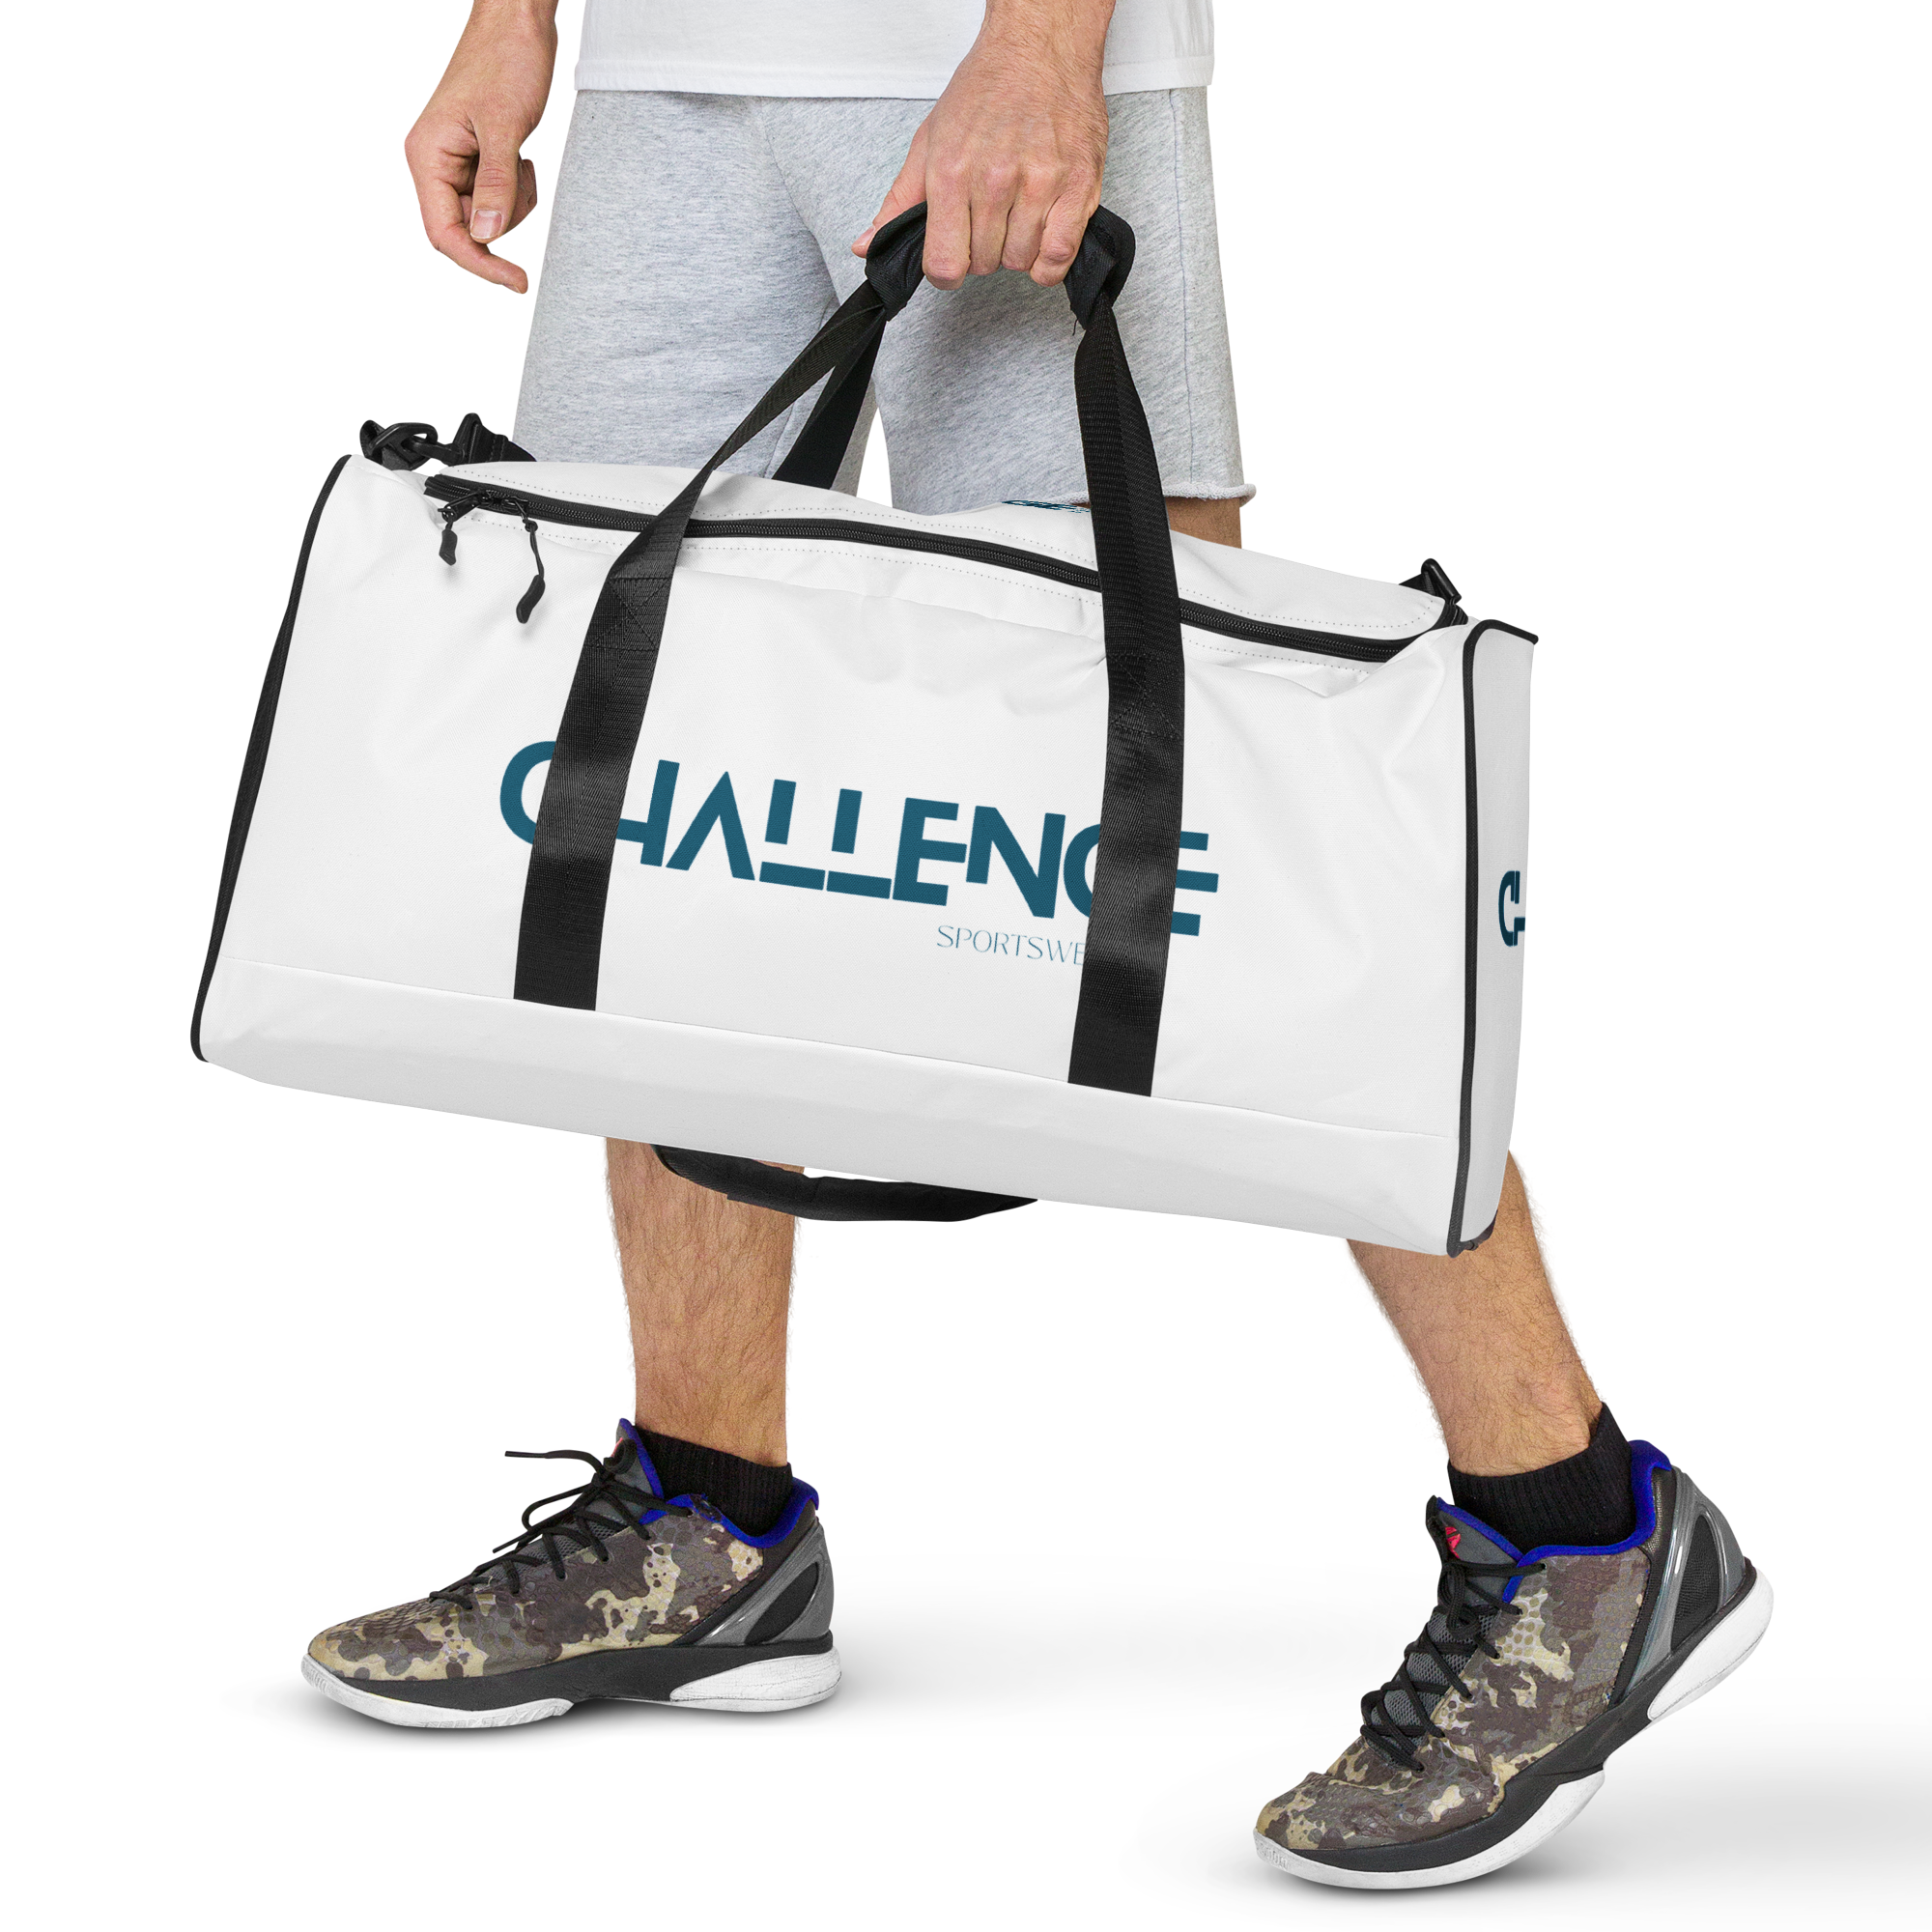 Challenge-sportswear - Duffle bag